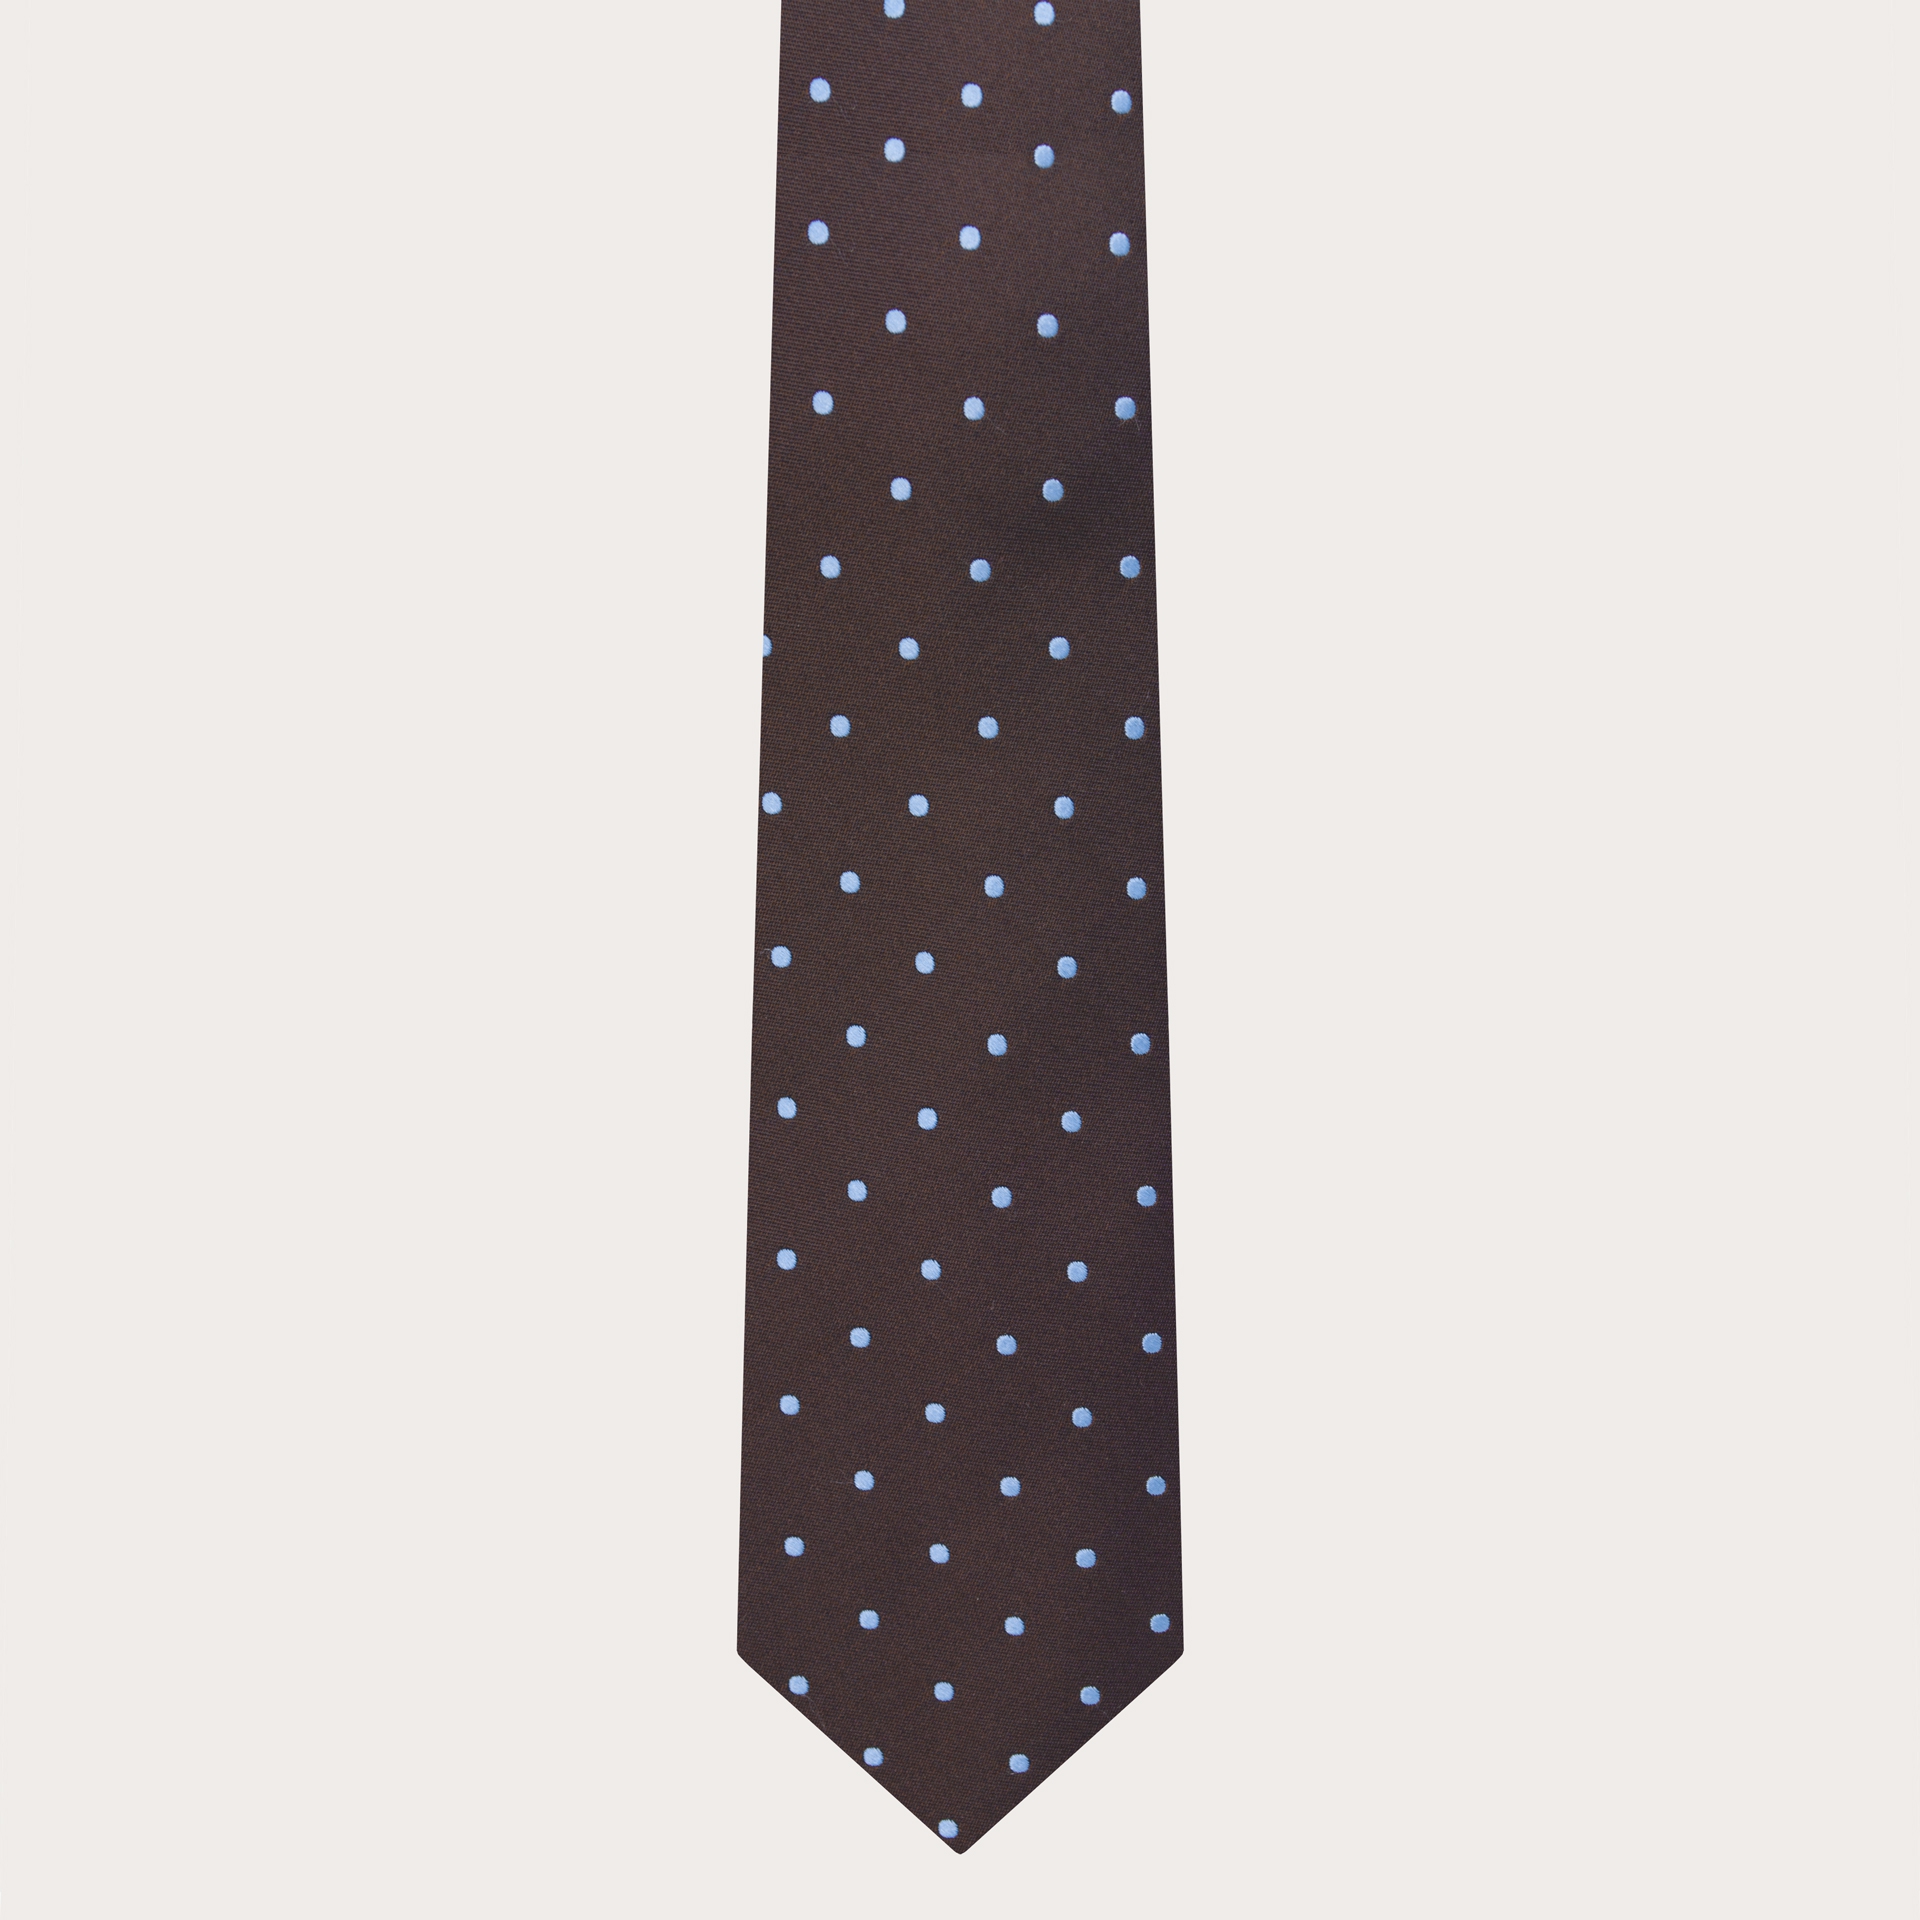 BRUCLE Cravate élégante marron à motif pointillé bleu clair